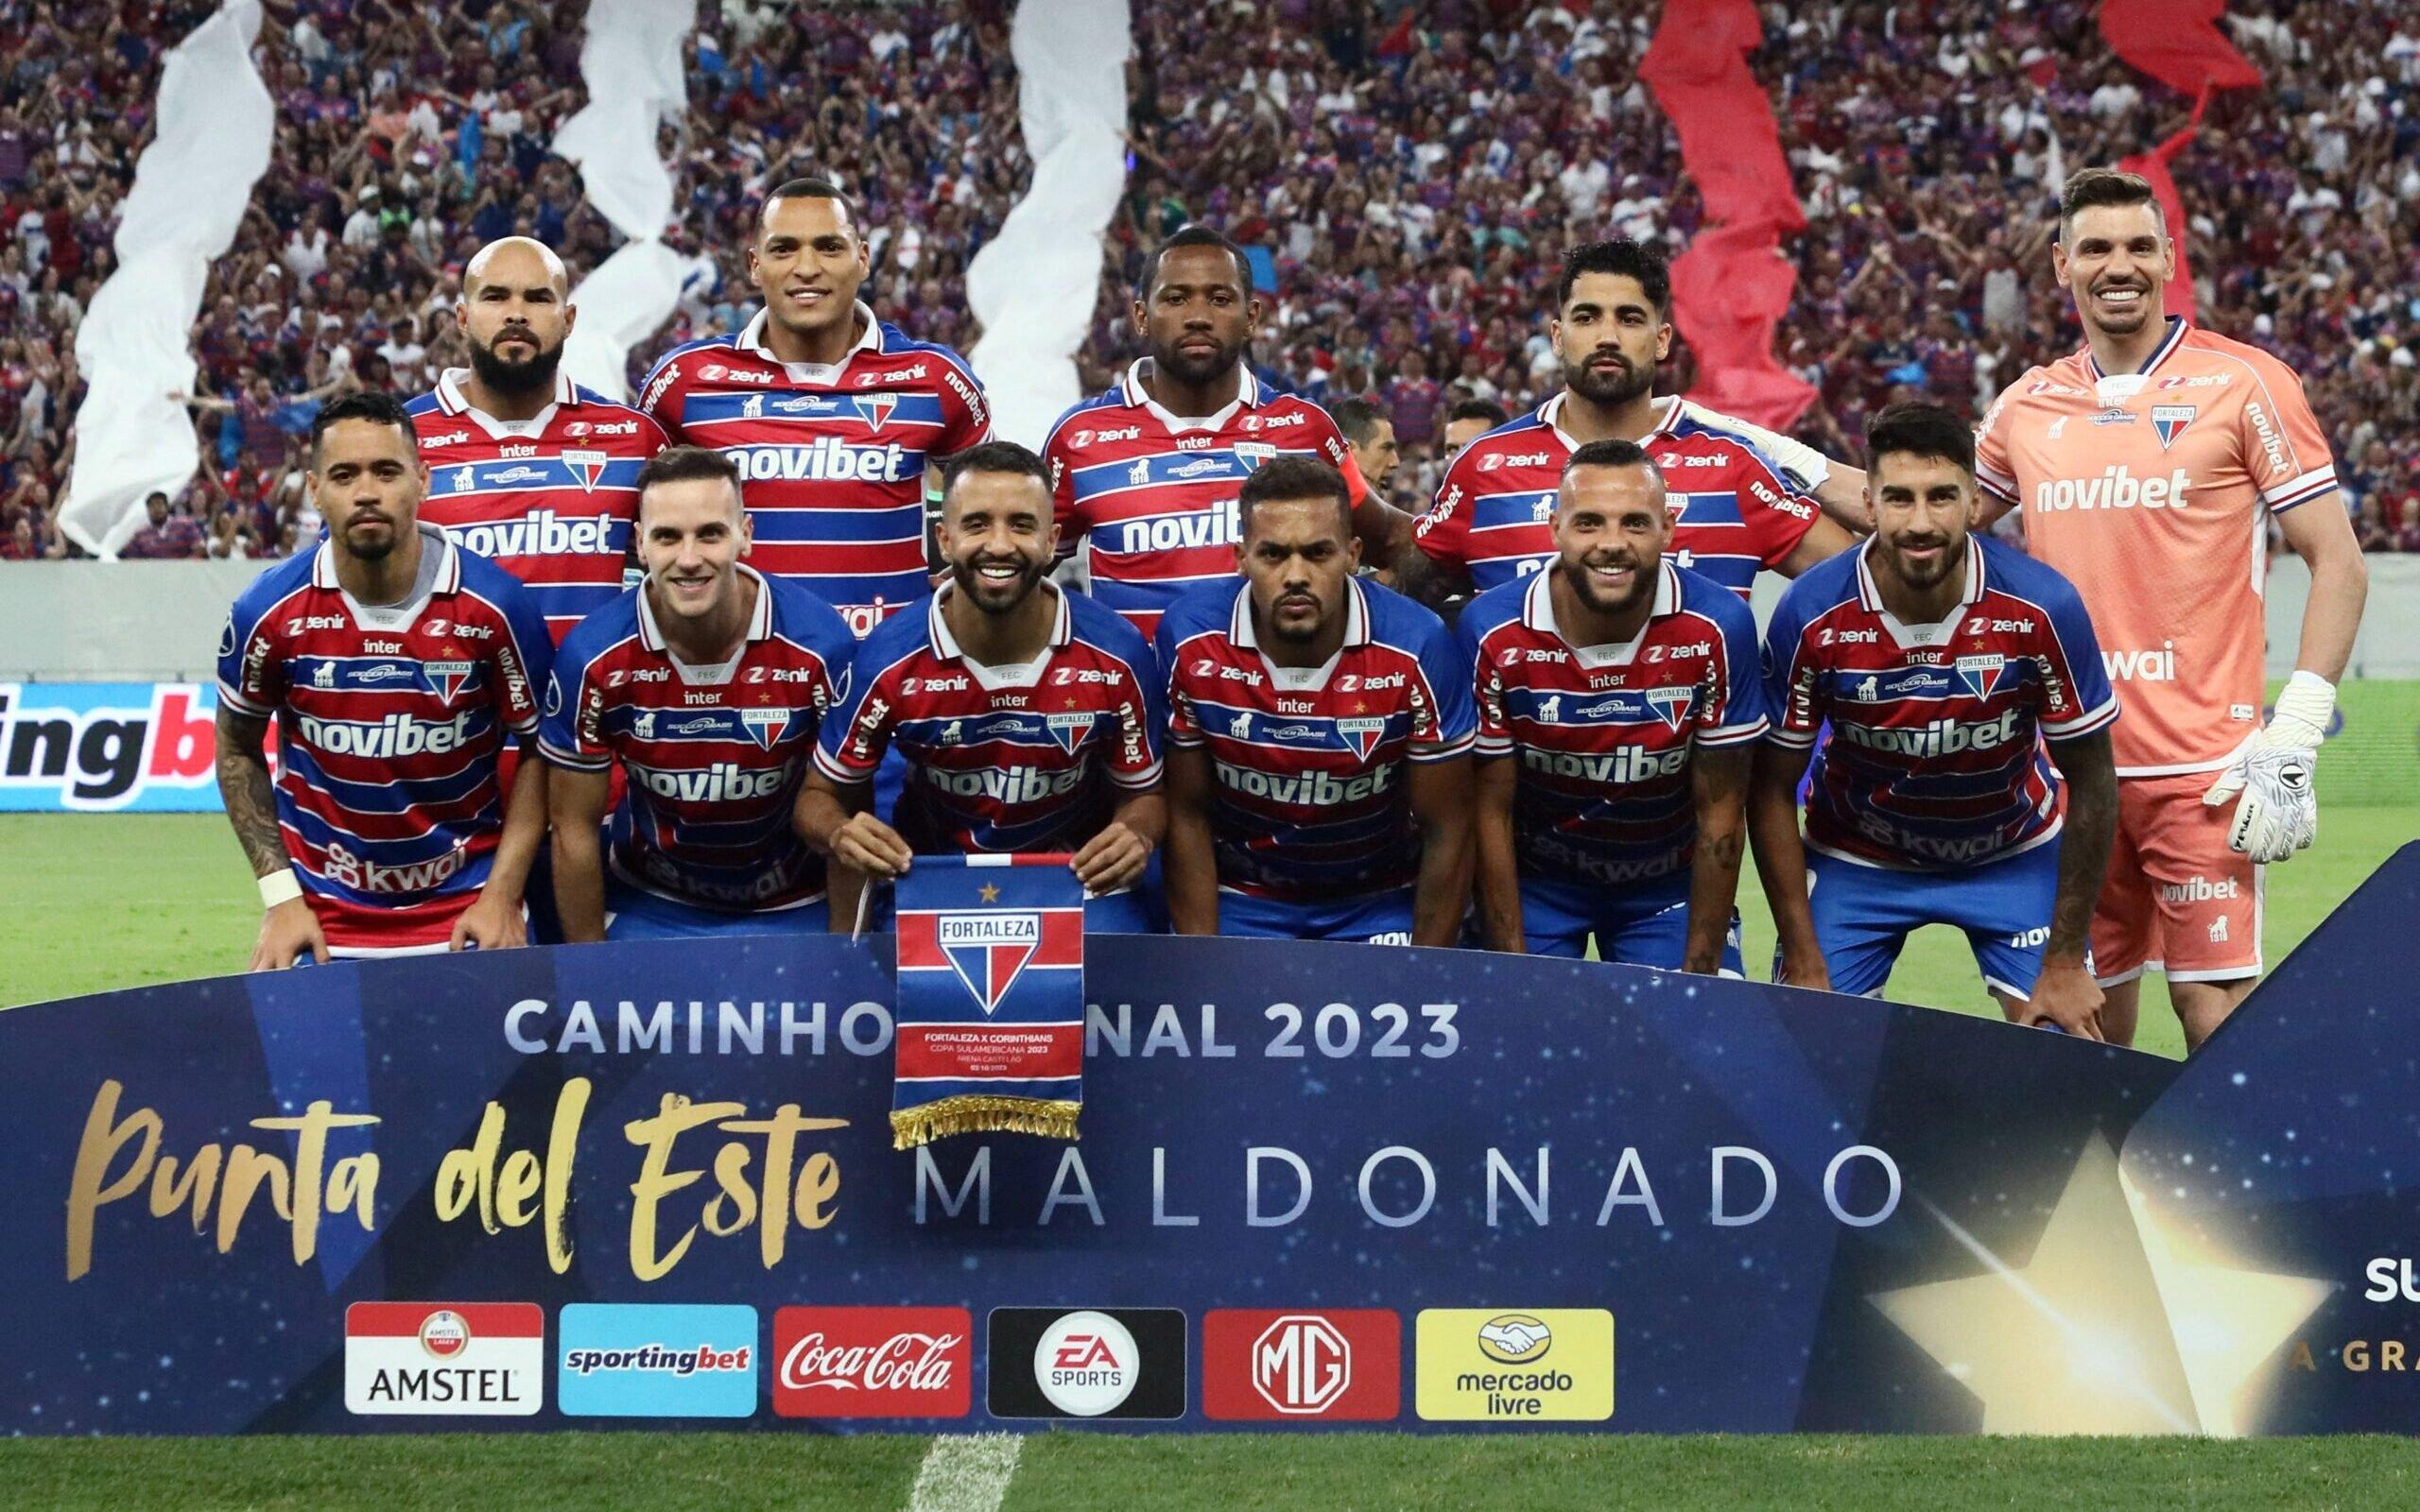 Fortaleza enfrentará um campeão na final da Copa Sul-Americana